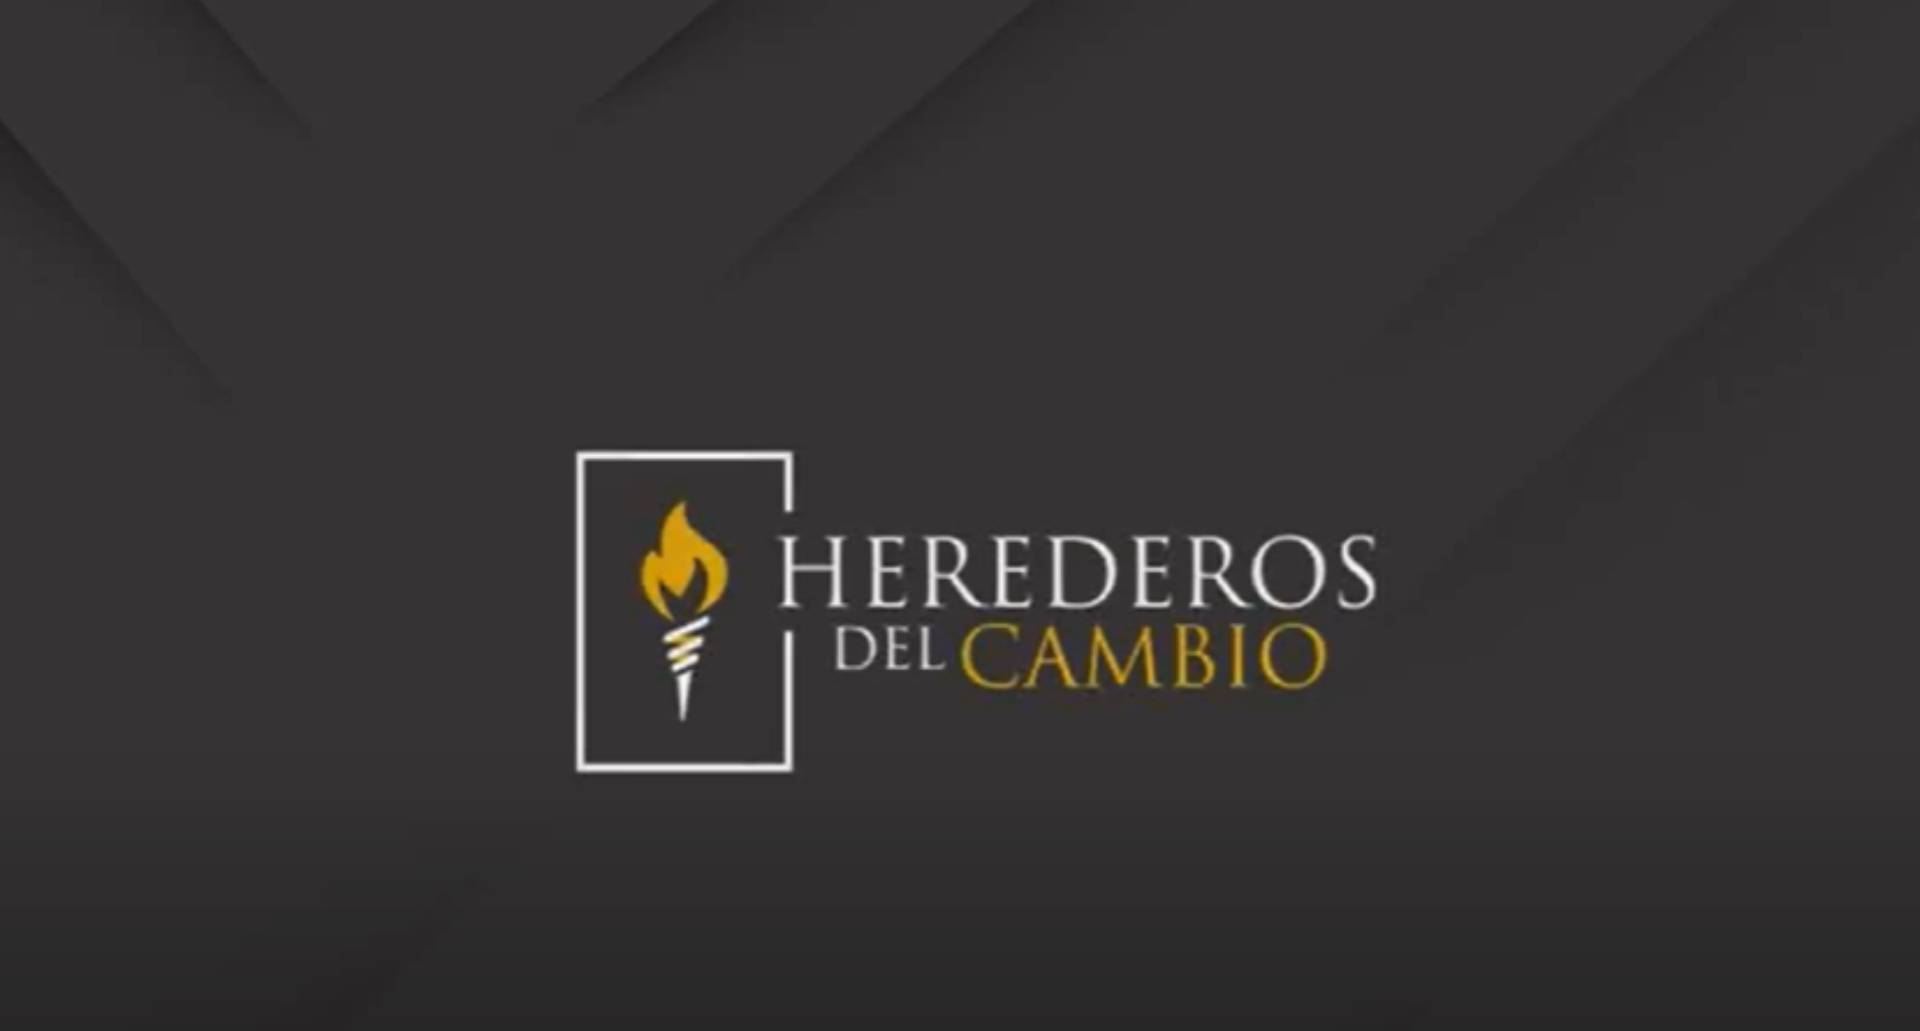 Comienza la segunda temporada del ciclo Herederos del Cambio con entrevistas a destacados líderes 